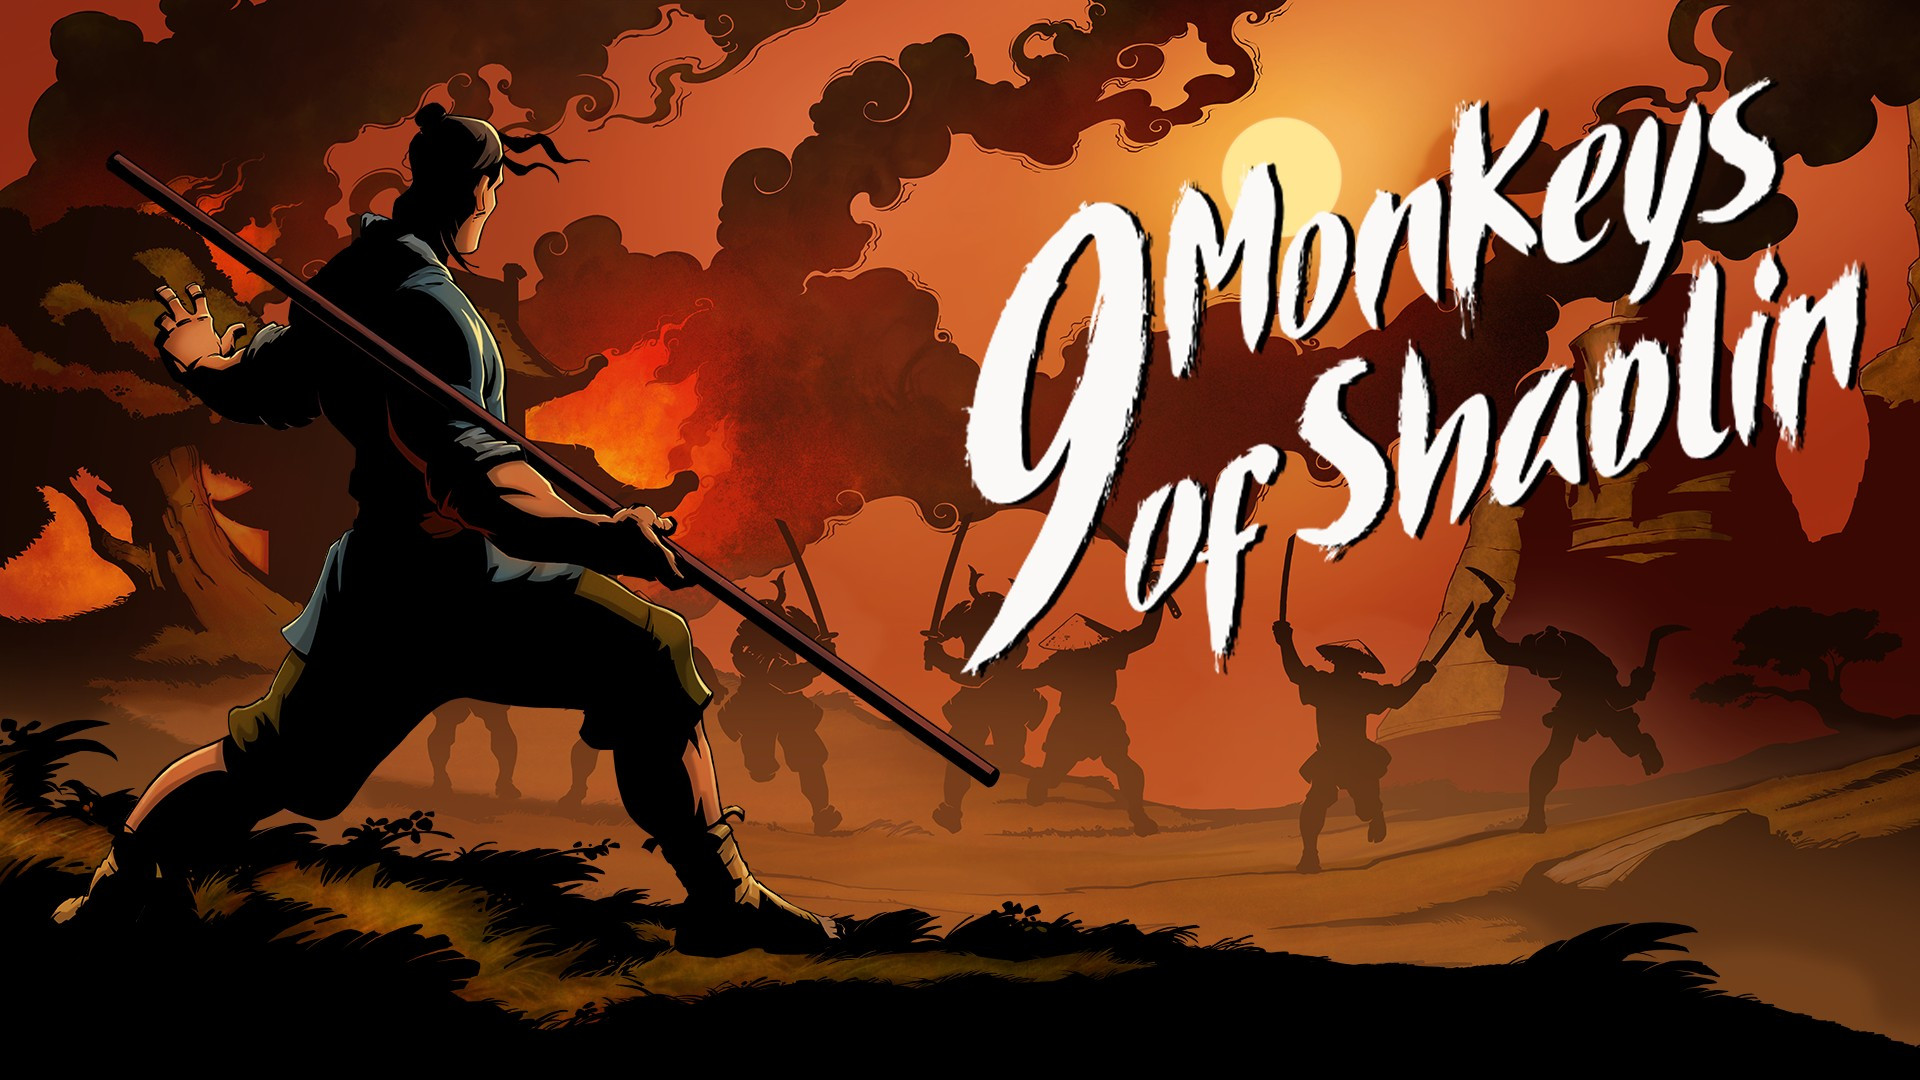 9 monkeys of shaolin switch release date